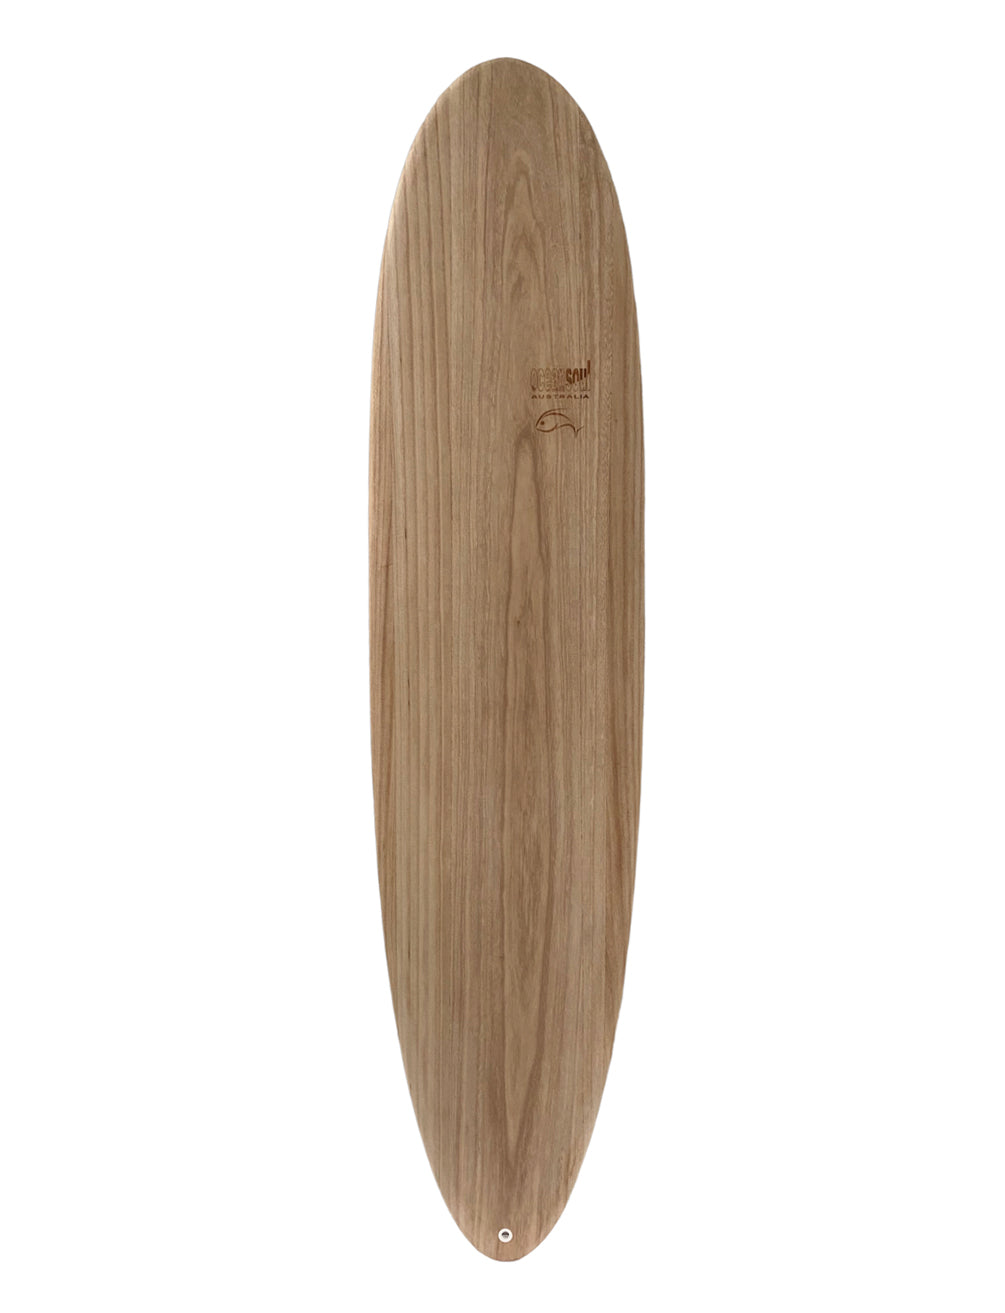 Ocean Soul Wood Wrapped Epoxy Surfboard - 7'6